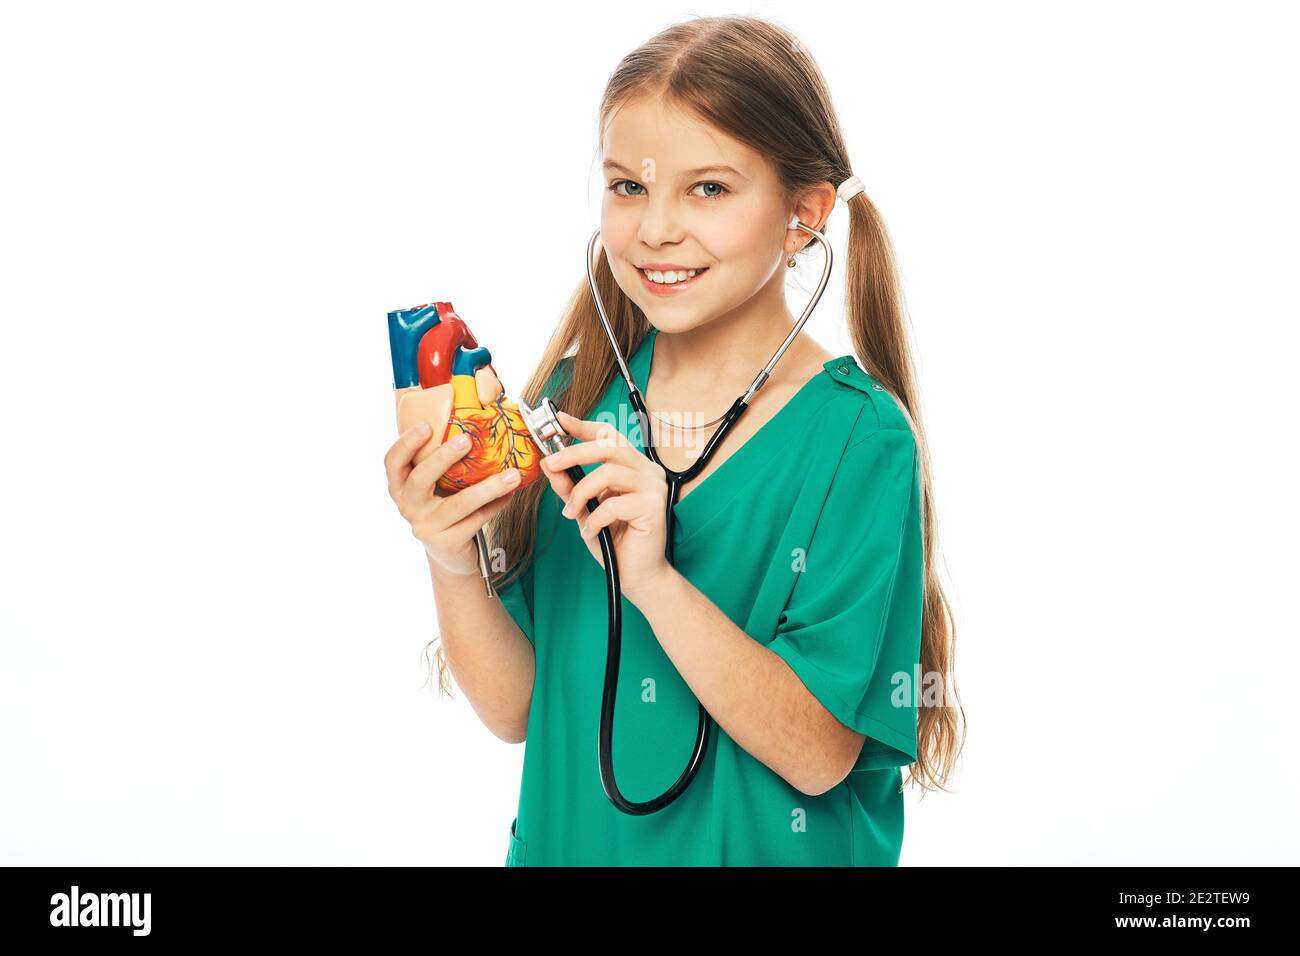 Konzept der Herzgesundheit und Diagnose von Herzerkrankungen bei Kindern. Teenager Mädchen hört auf ein Herz-Modell mit einem Stethoskop Stockfoto